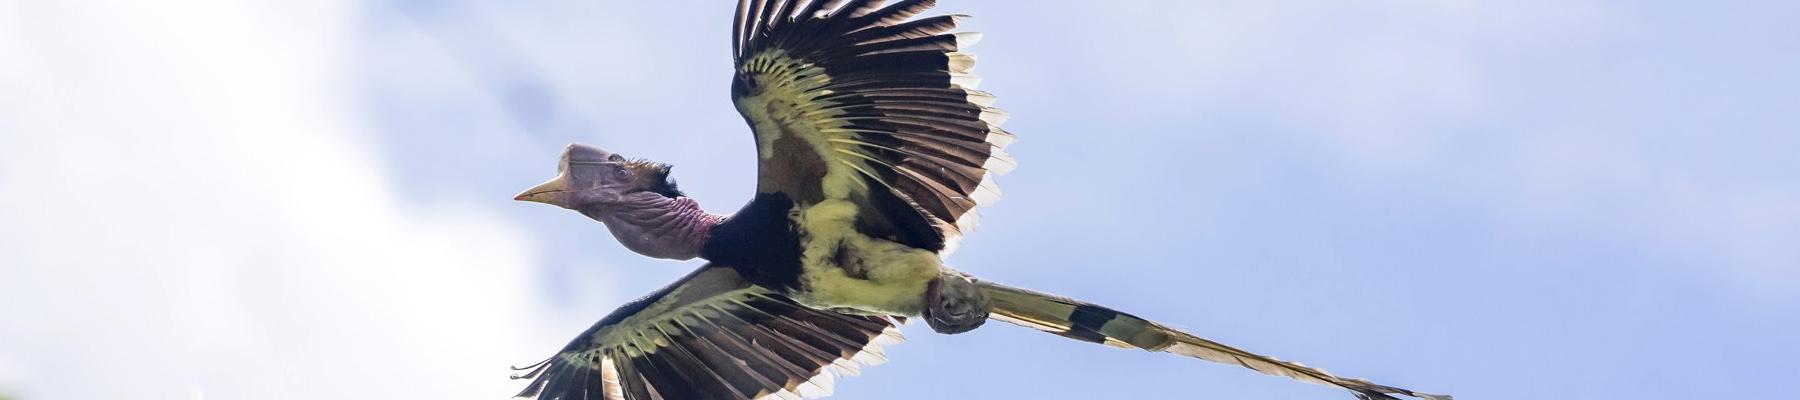 Flying in the face of danger, the Helmeted Hornbill © Muhammad Alzahri